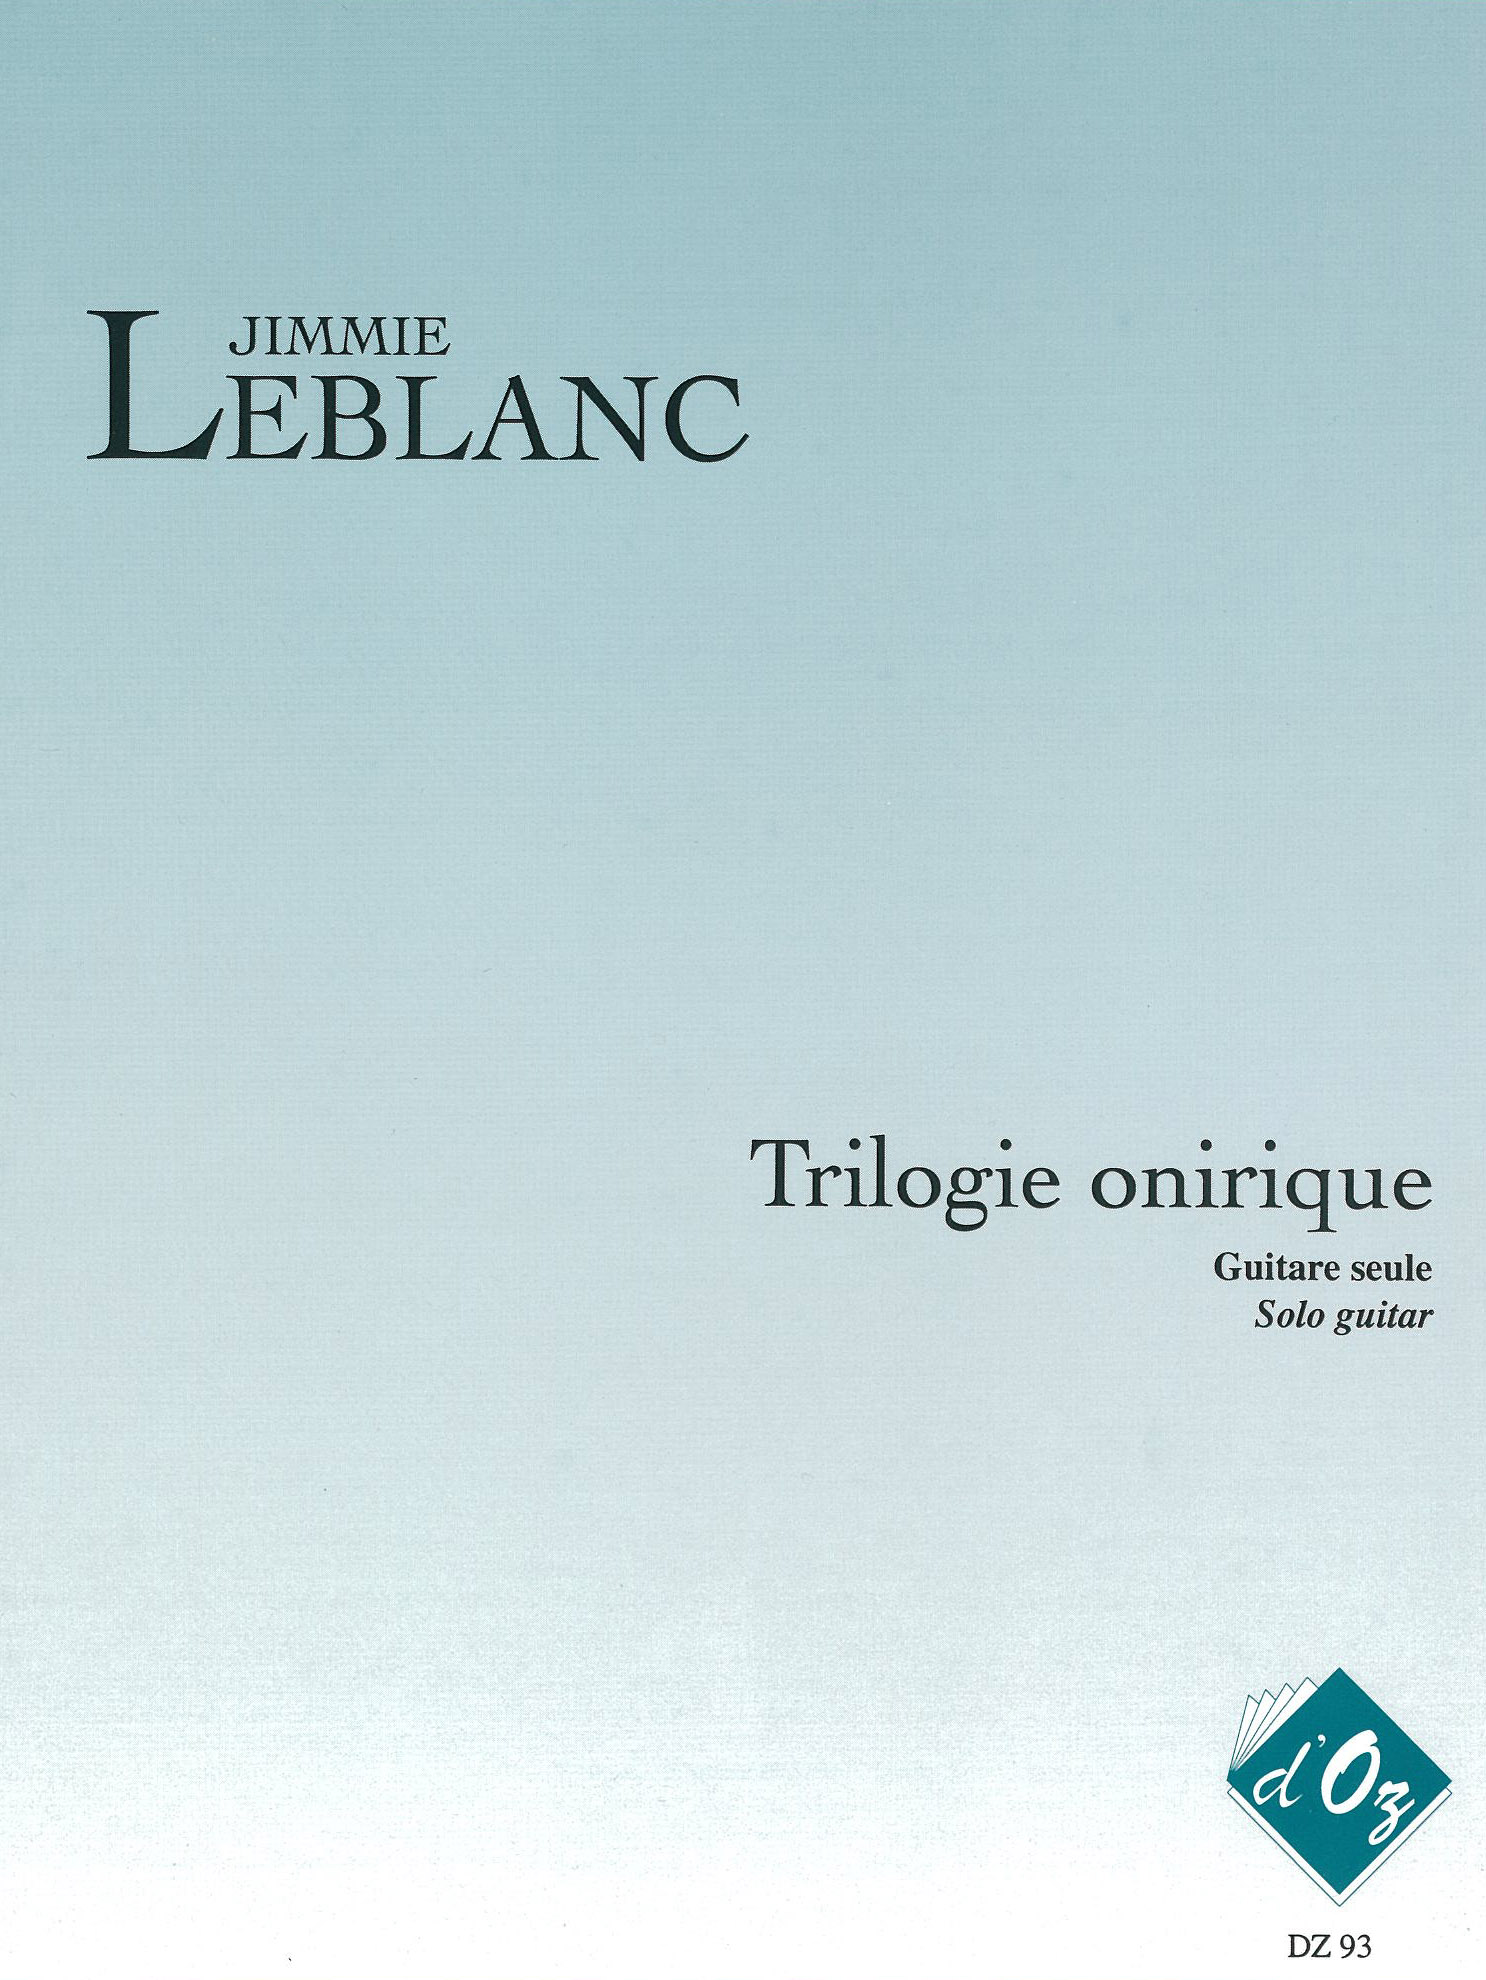 Trilogie Onirique (LEBLANC JIMMIE)